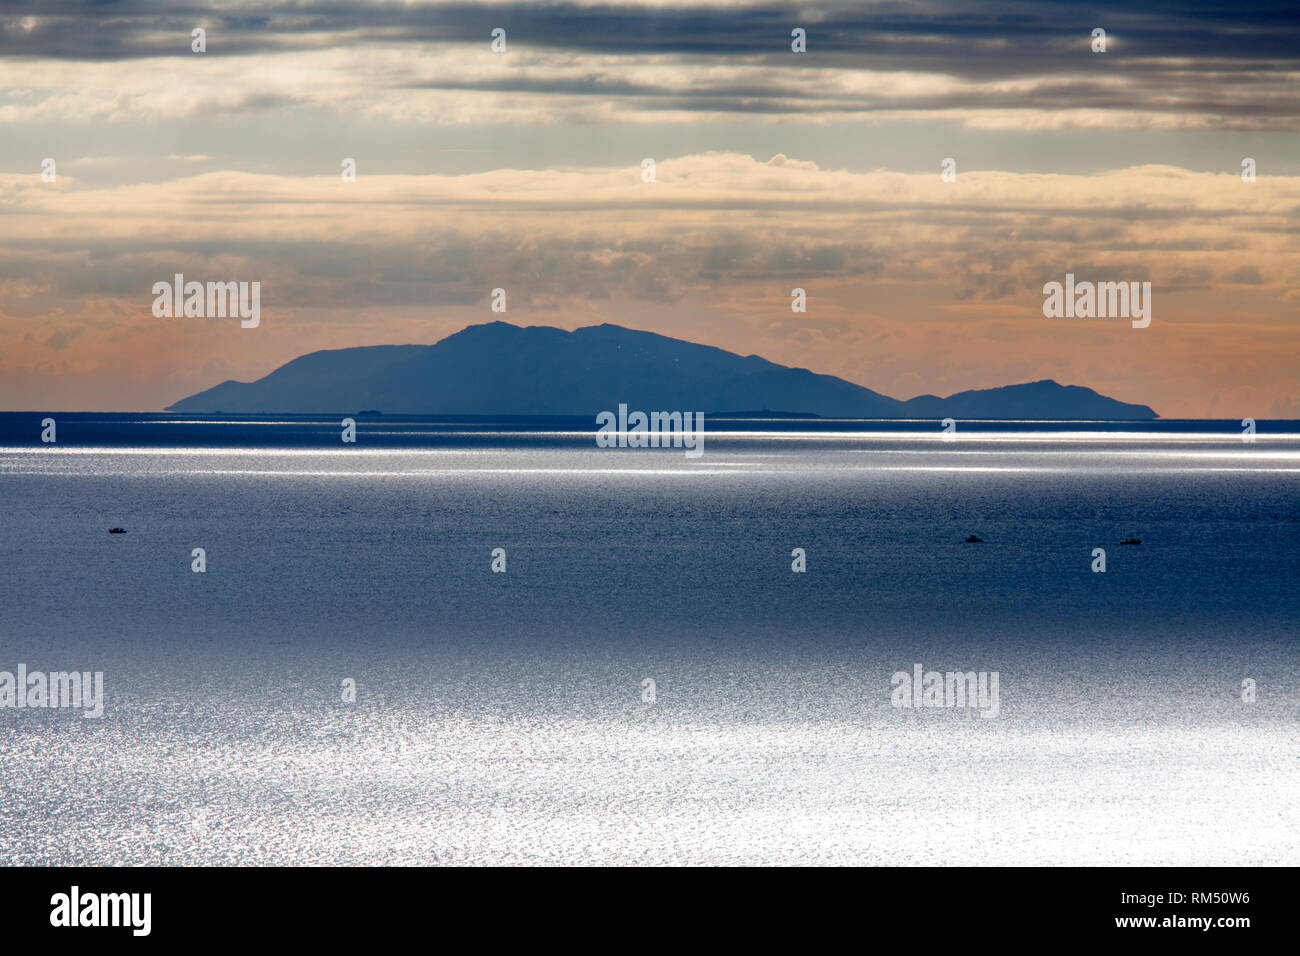 View with Giglio island from Castiglione della Pescaia Castiglione, province of Grosseto, Tuscany, Italy, Europe Stock Photo